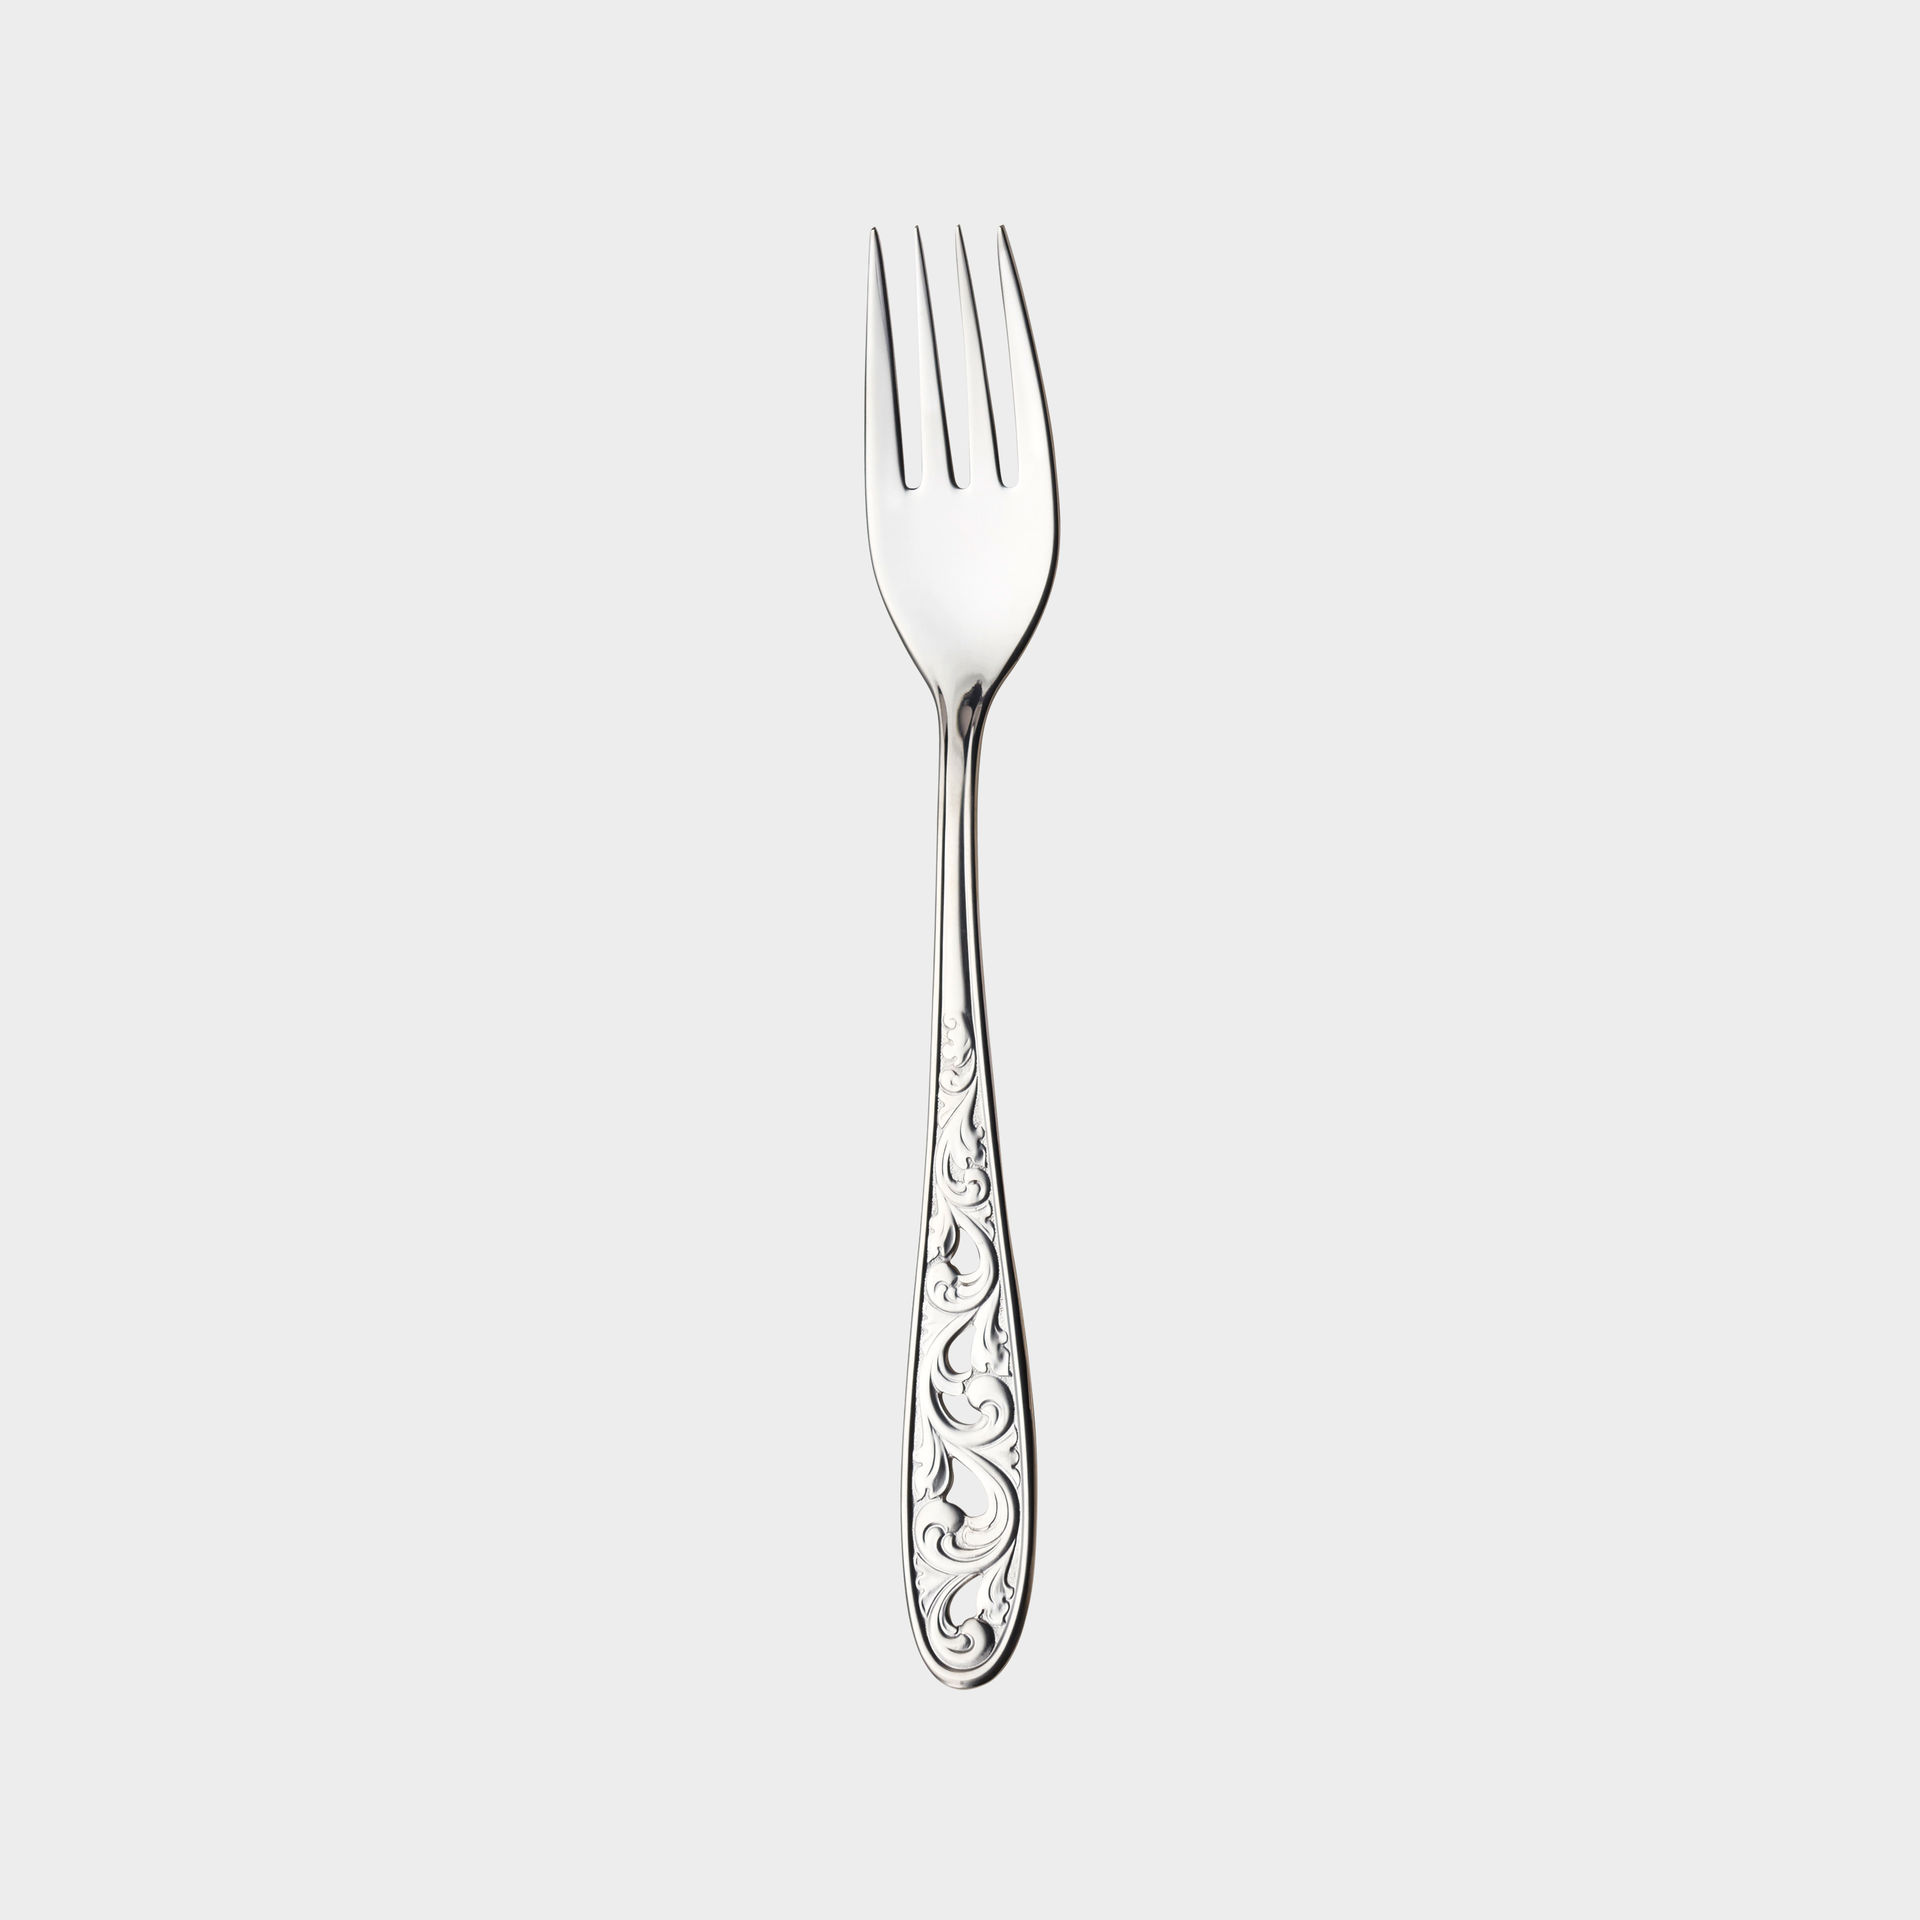 Kristin dinner fork product image